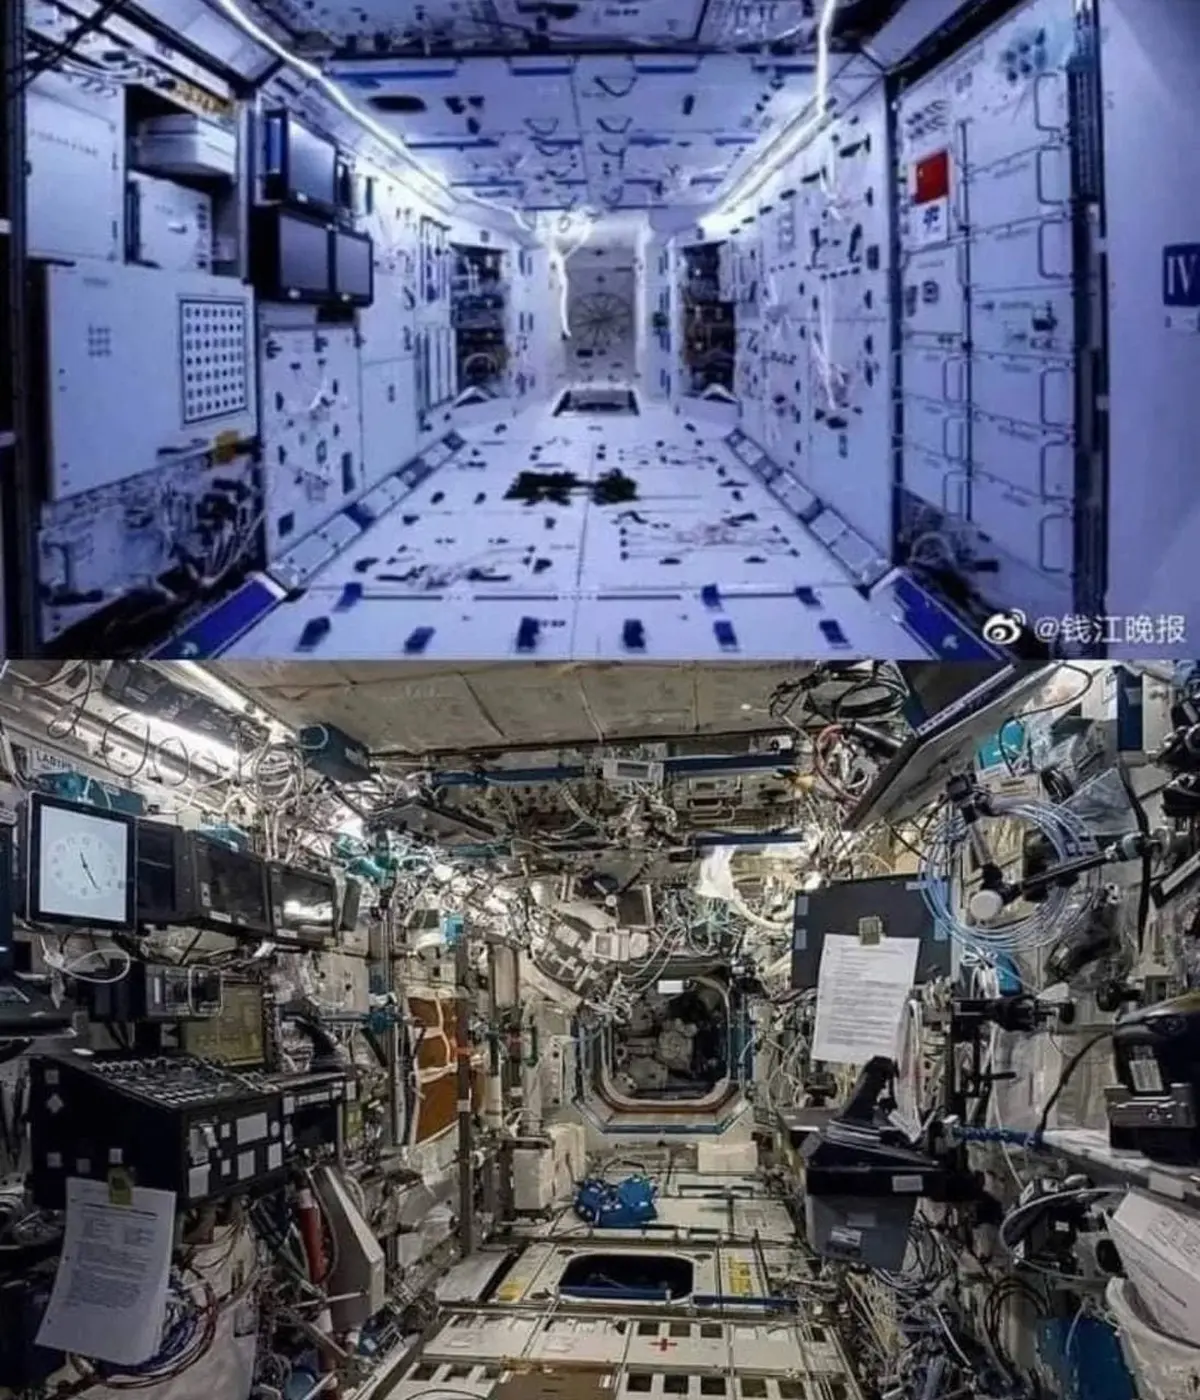 نظم فنگ‌شویی ، داخل ایستگاه فضایی « تیانگوگ» چین در مقایسه با ایستگاه فضایی بین‌المللی+ عکس